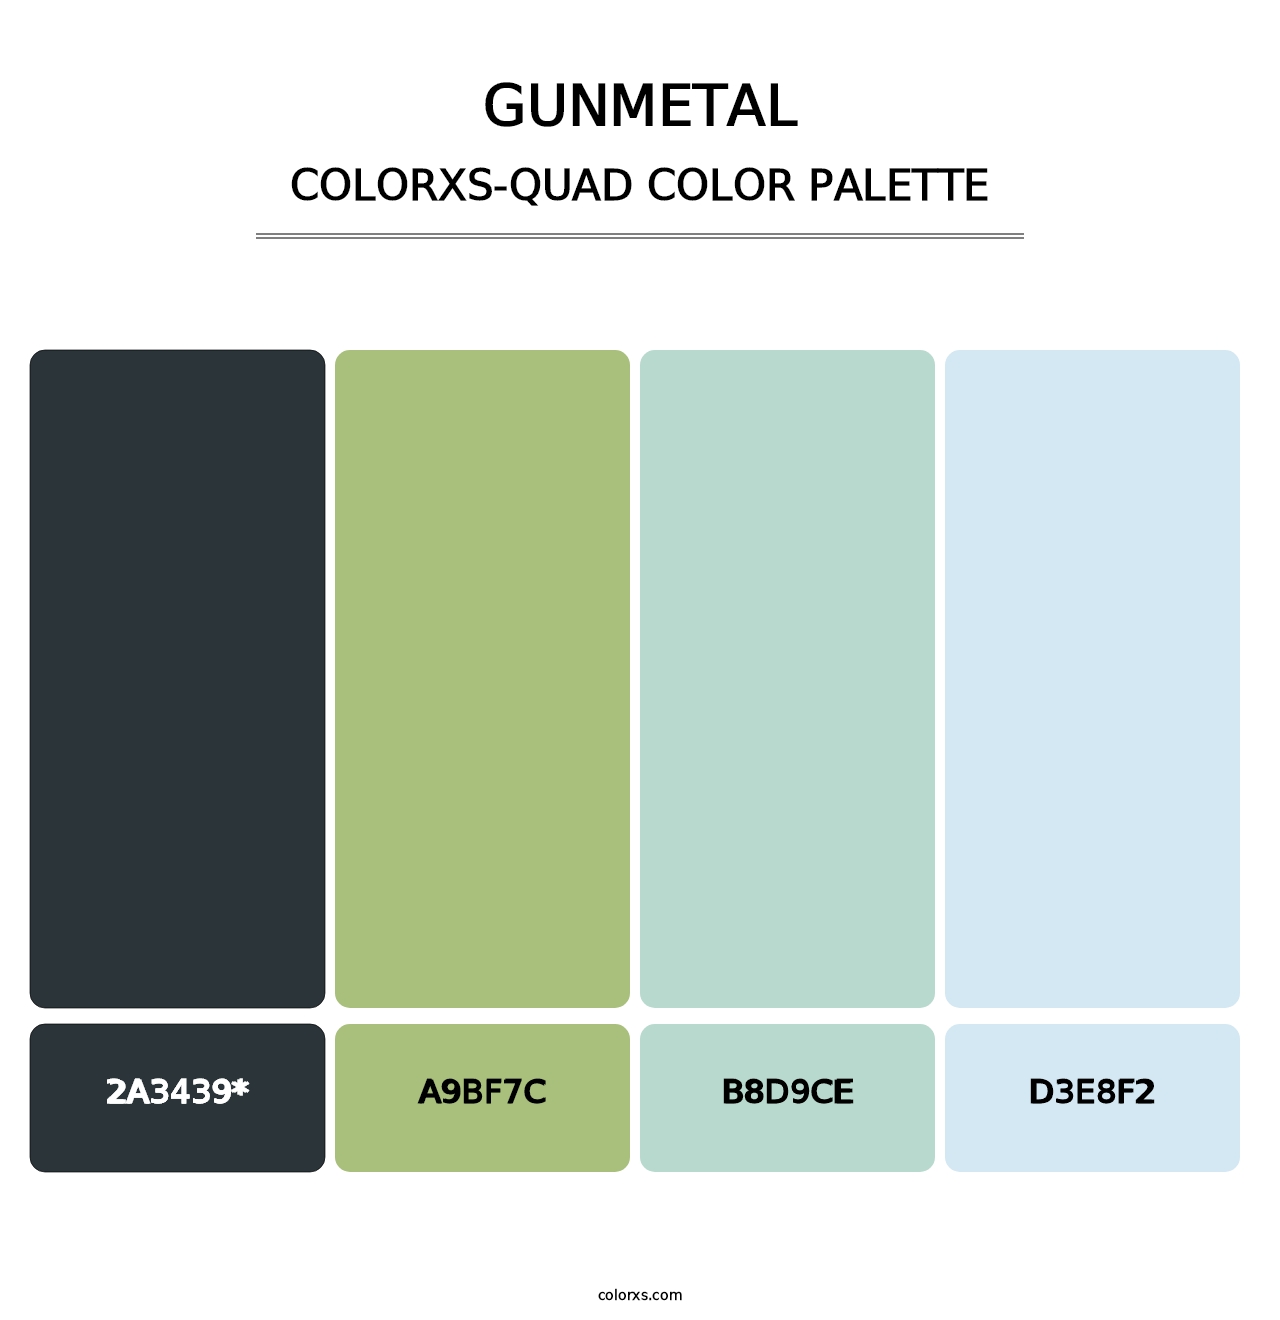 Gunmetal - Colorxs Quad Palette